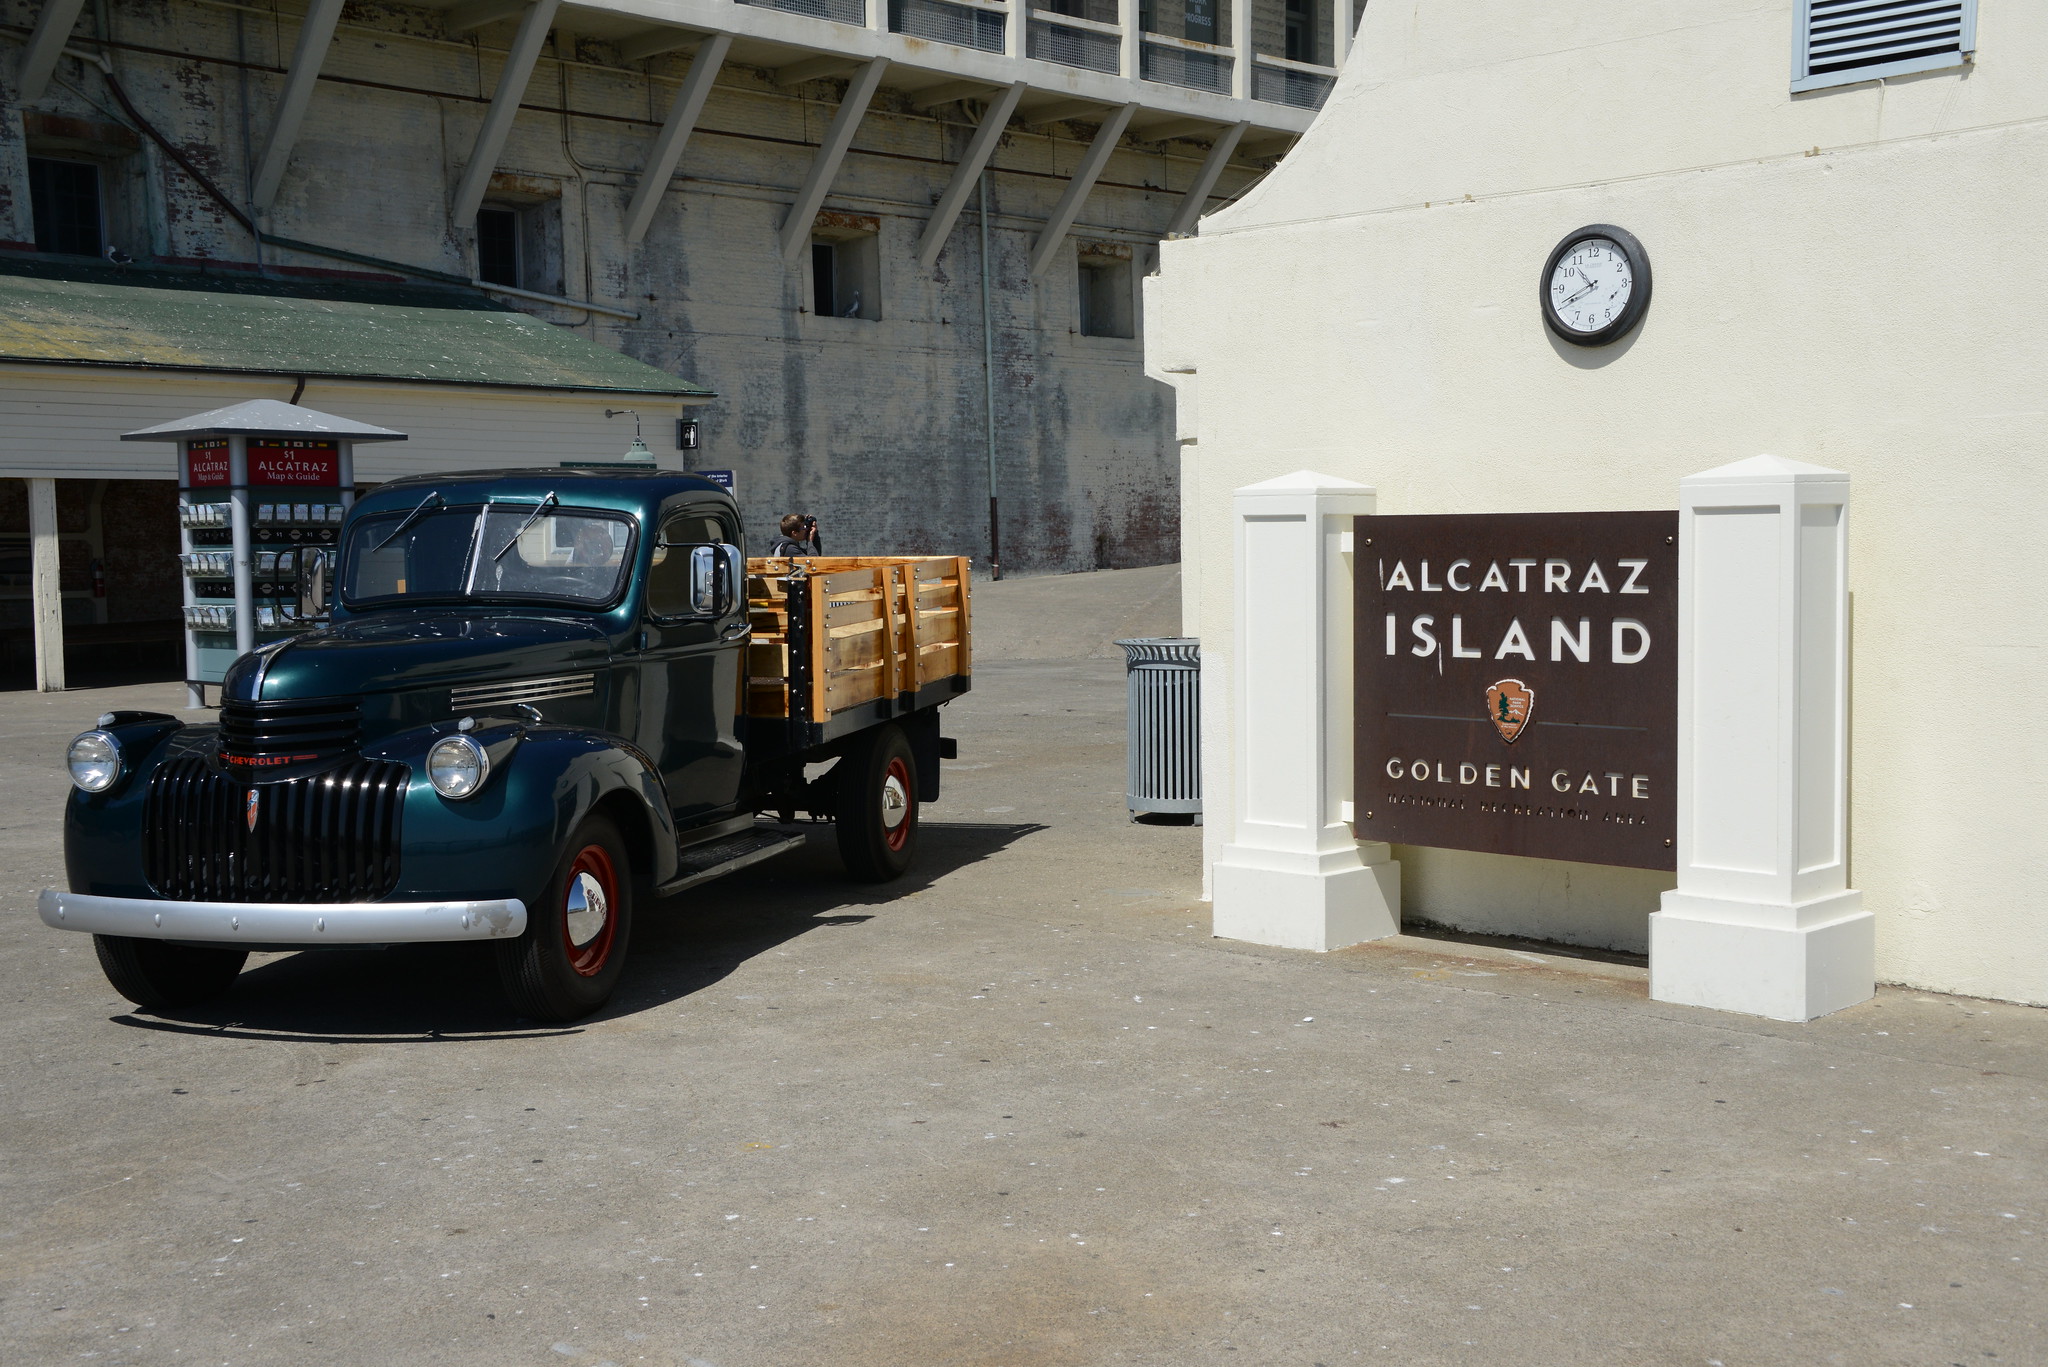 Going to Alcatraz!